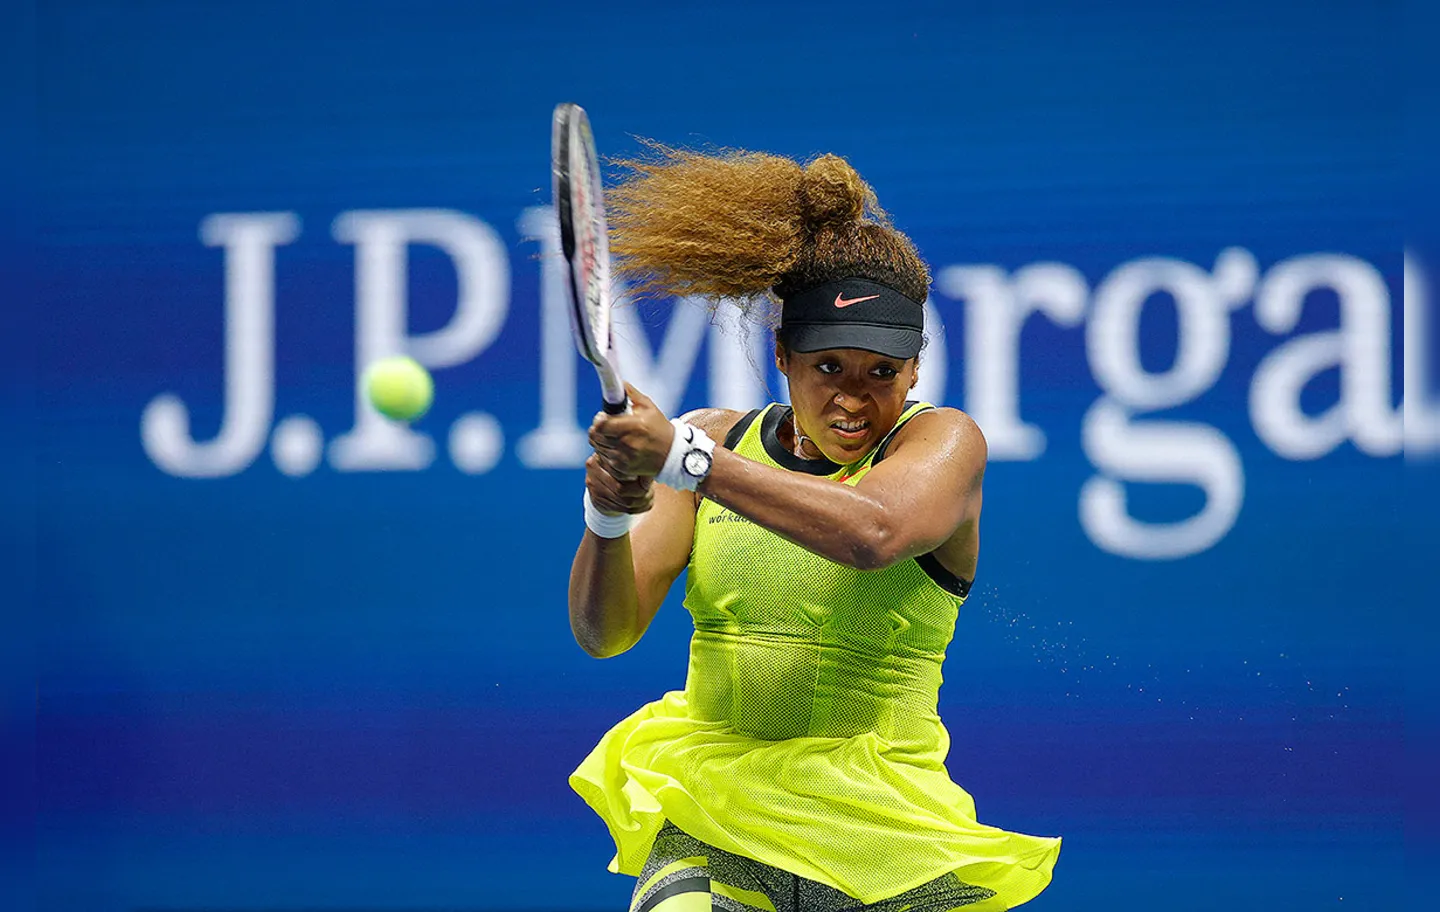 A tenista japonesa busca conquistar pela terceira vez o título desta competição | Foto: Sarah Stier | Getty Images via AFP